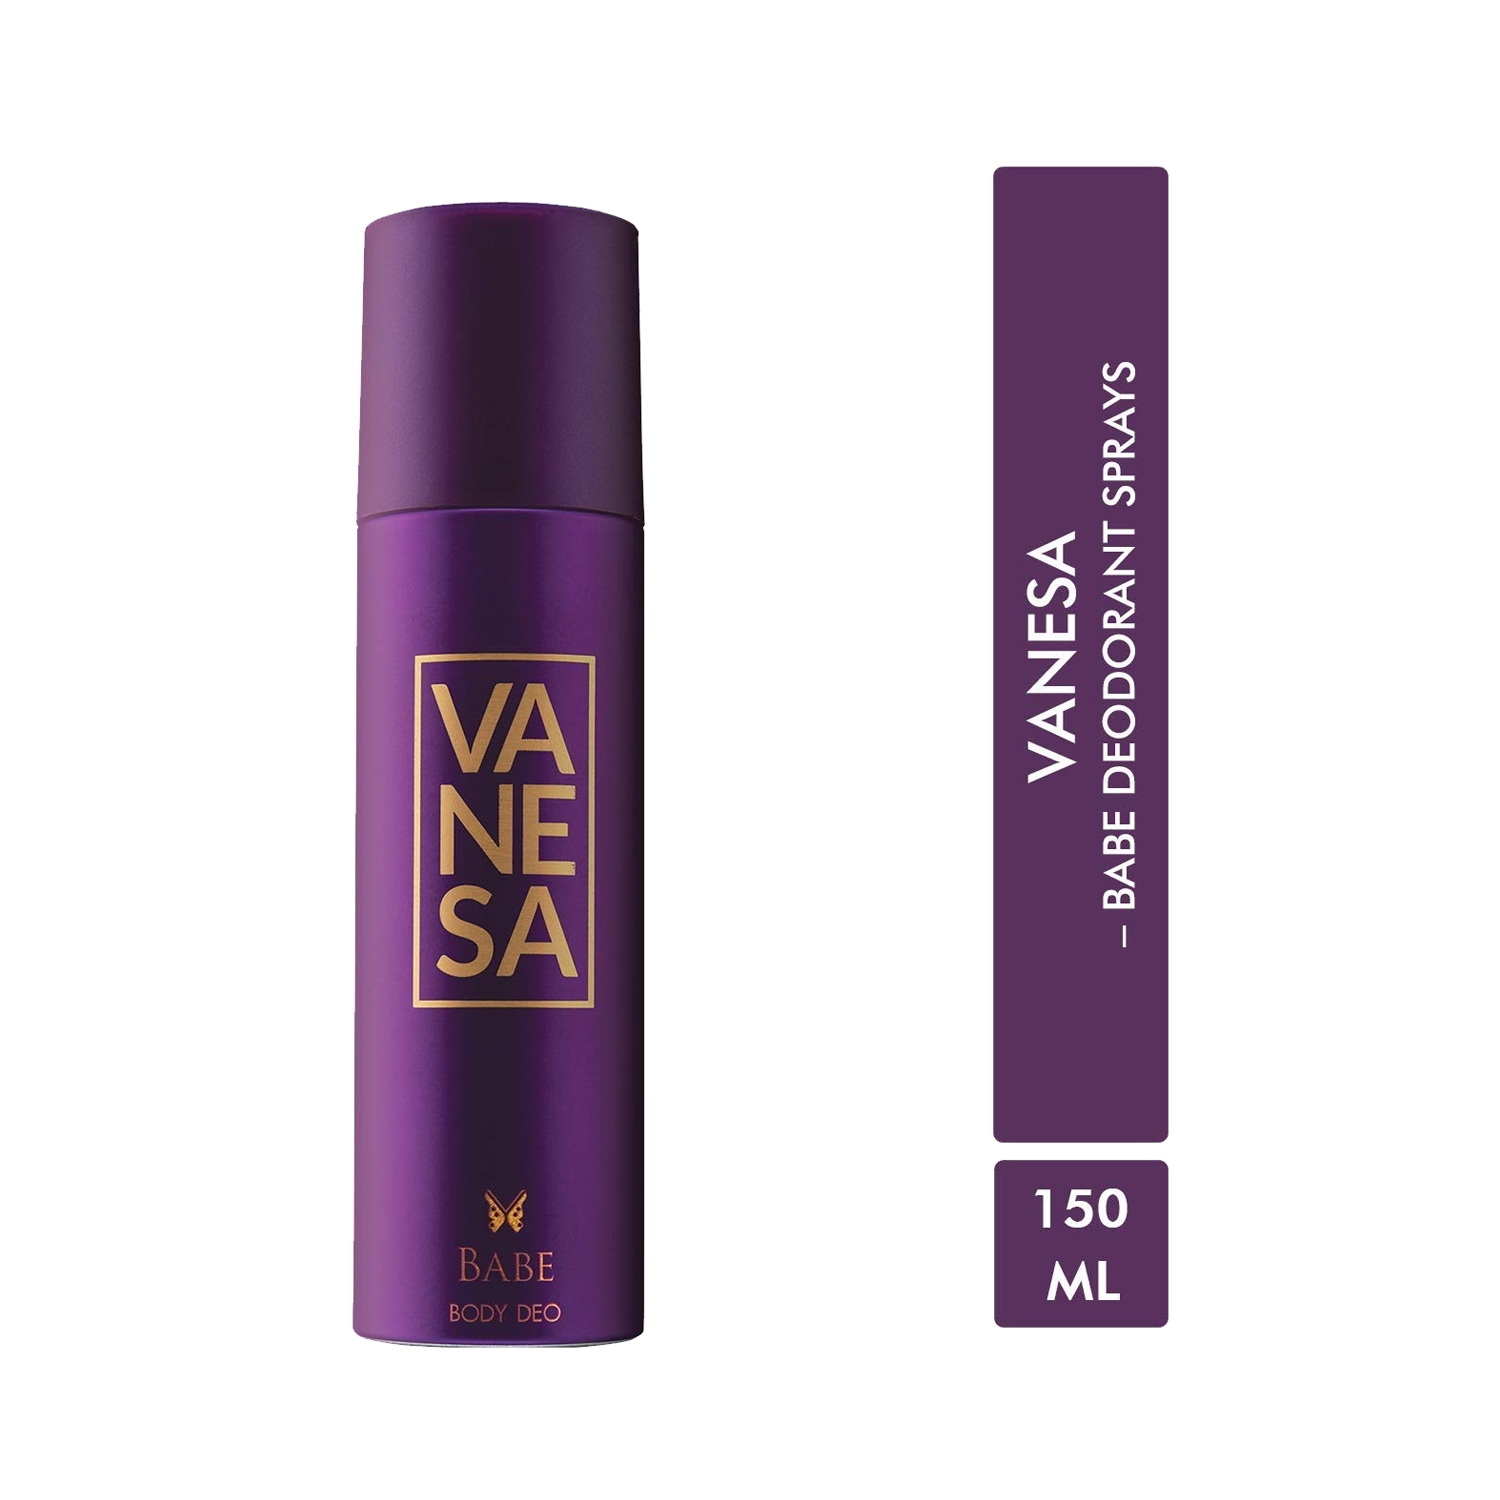 Vanesa Babe Deodorant Body Spray (150ml)